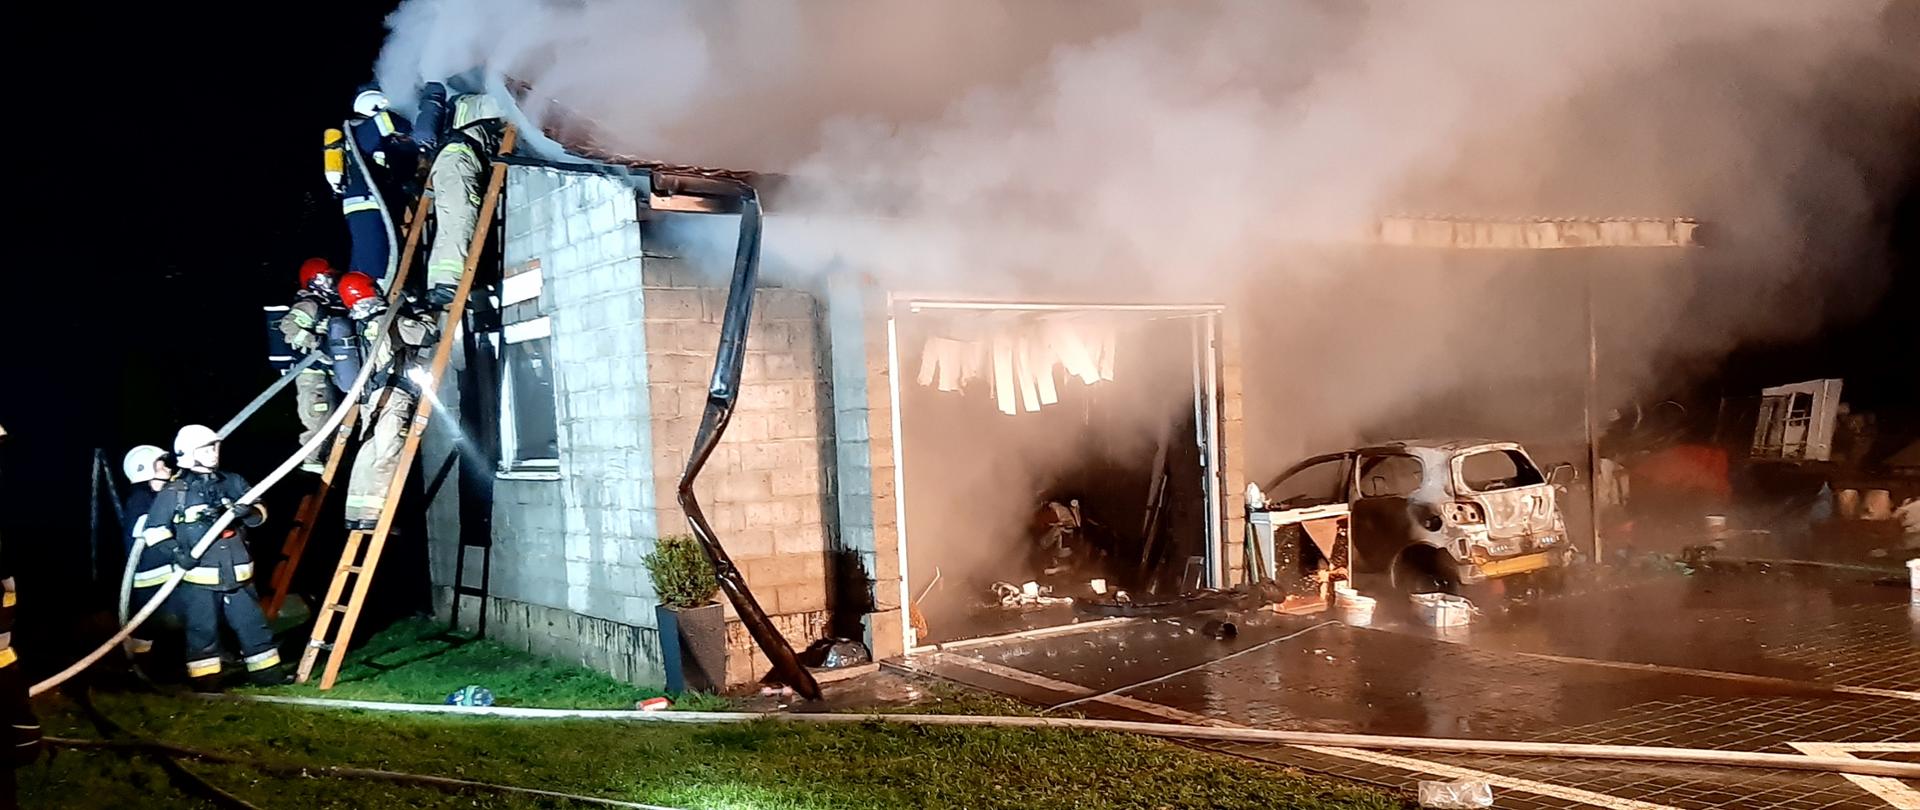 Zdjęcie przedstawia garaż wolnostojący w trakcie pożaru. Dwóch ratowników gasi pożar z drabiny dostawnej, którą zabezpiecza dodatkowych 4. W jednej z bram widać spalony samochód osobowy.